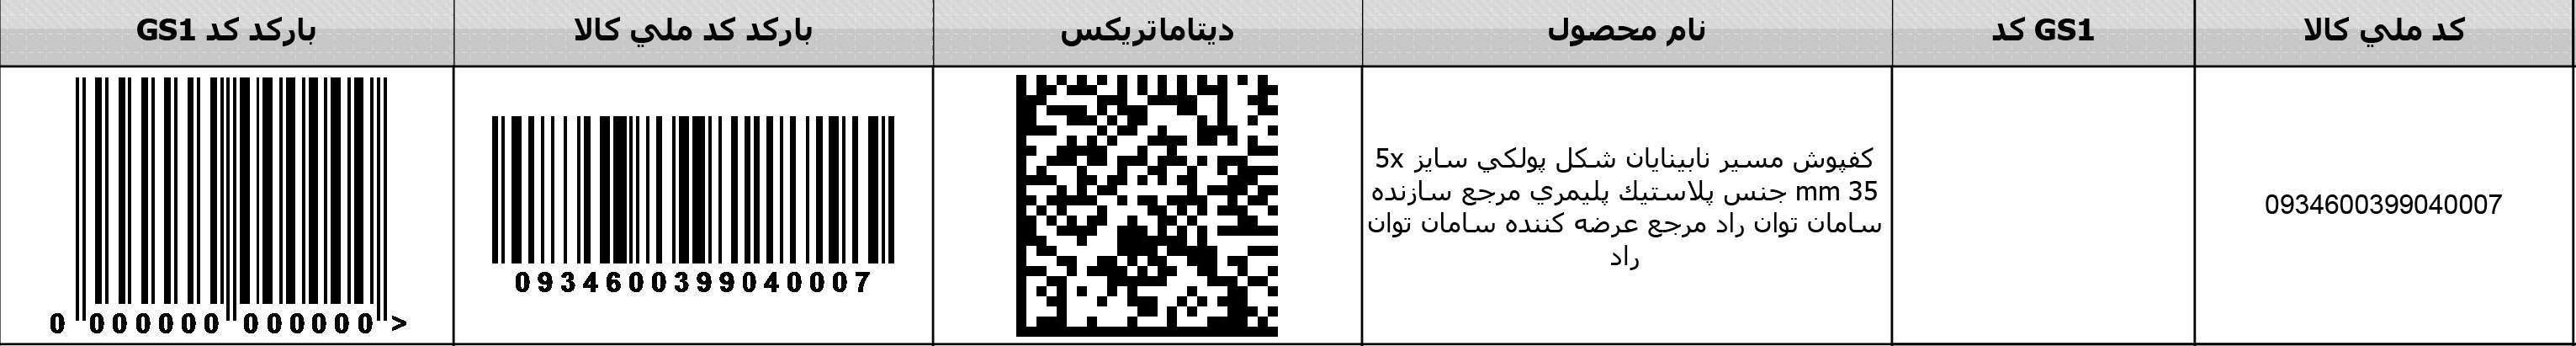 ایران کد پولکی پلیمری